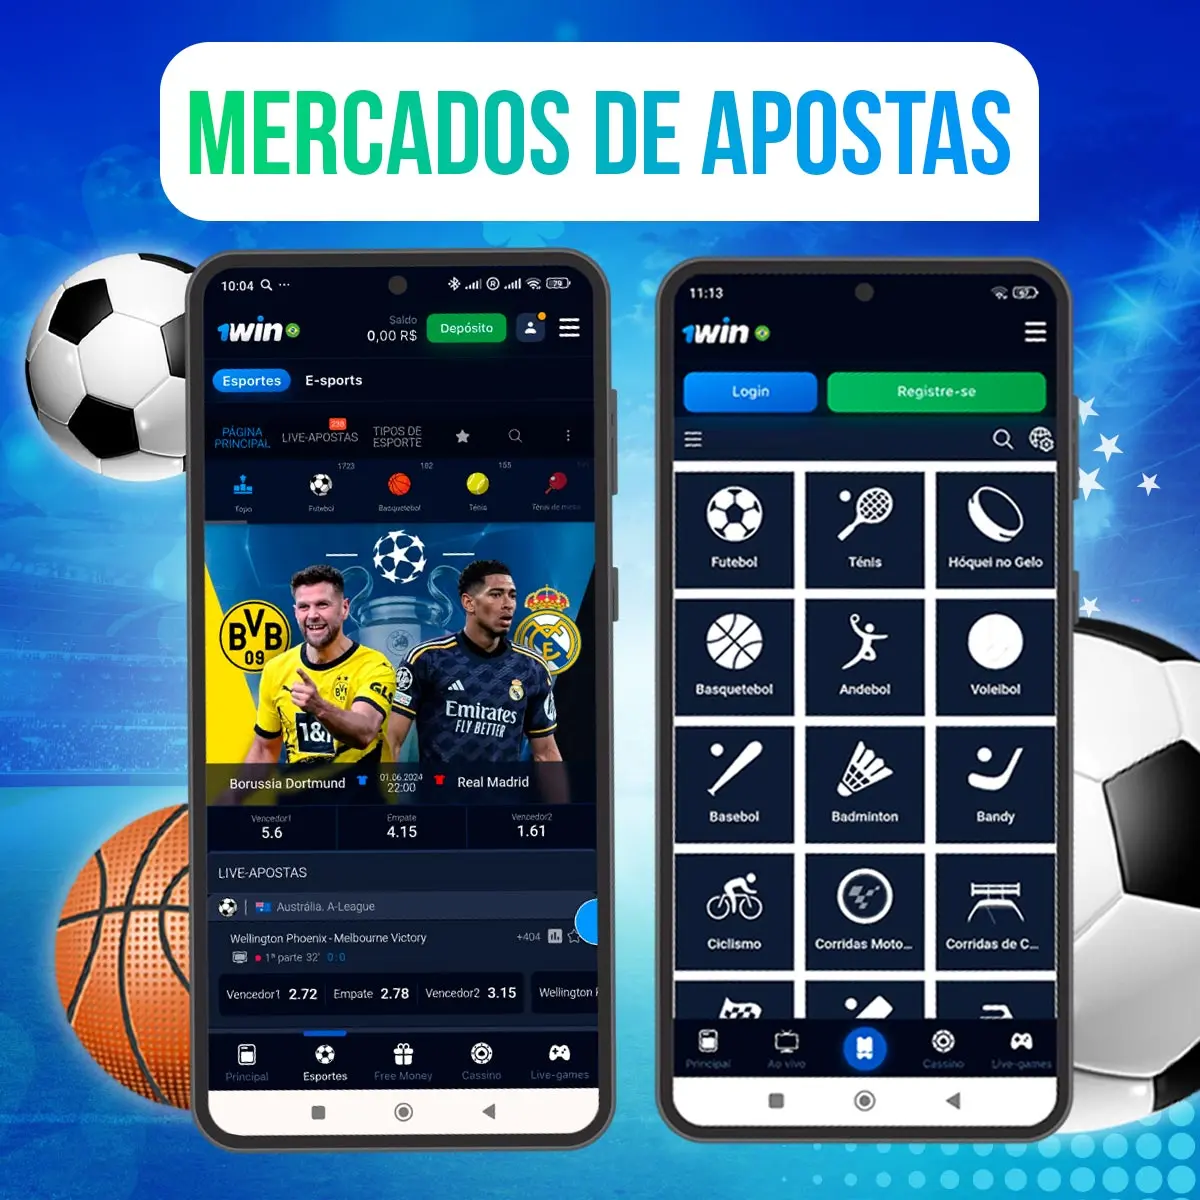 Mercados de apostas esportivas no aplicativo 1Win